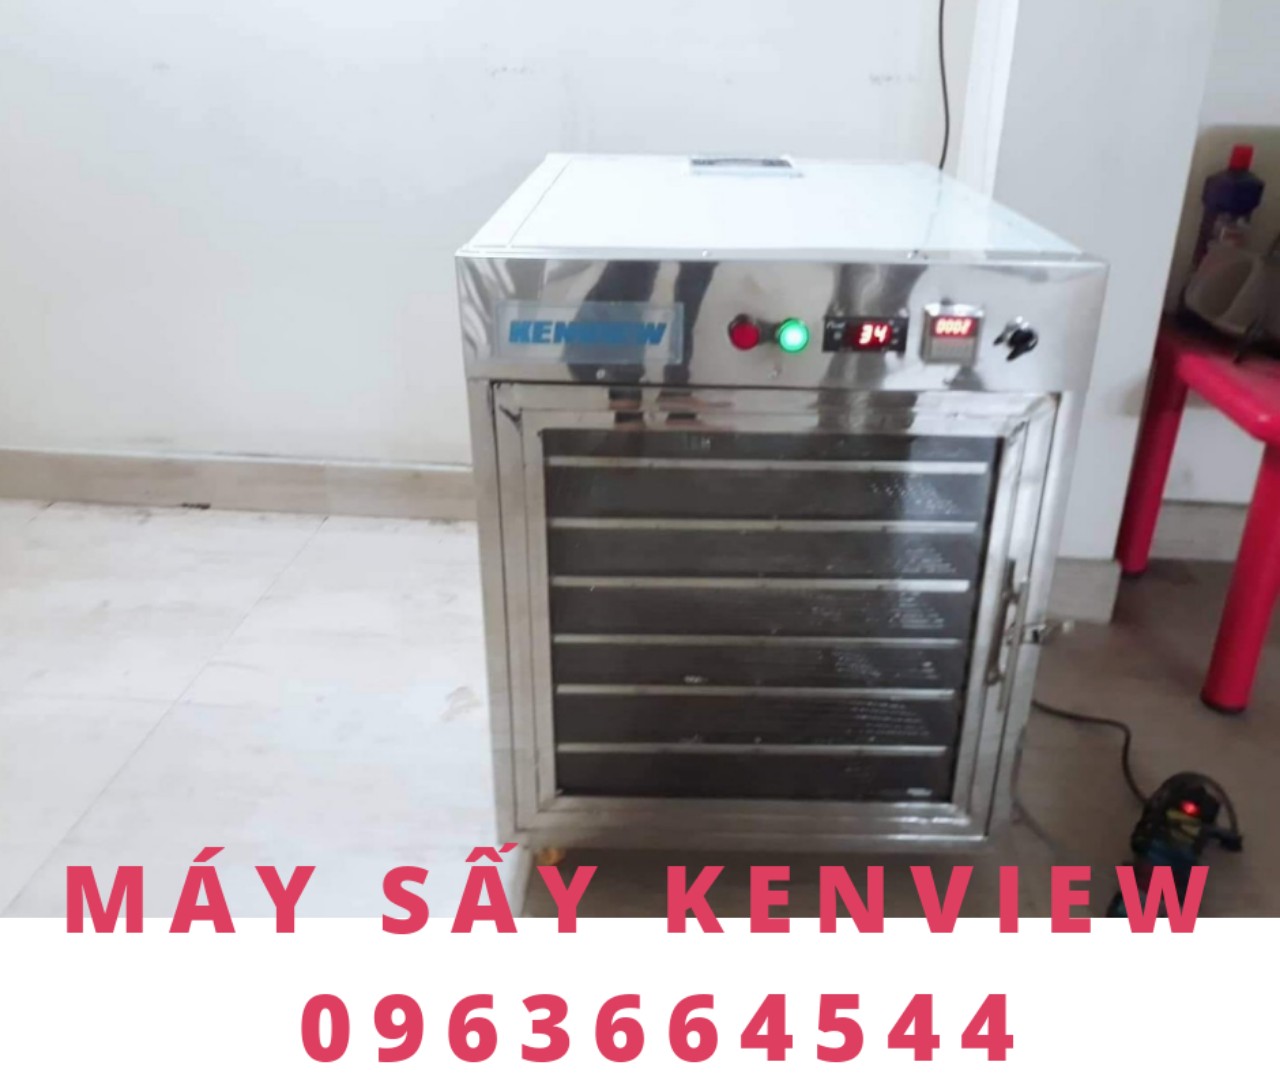 Kenview cung cấp máy sấy rau, củ, quả ở Lâm Đồng – Máy sấy thực phẩm